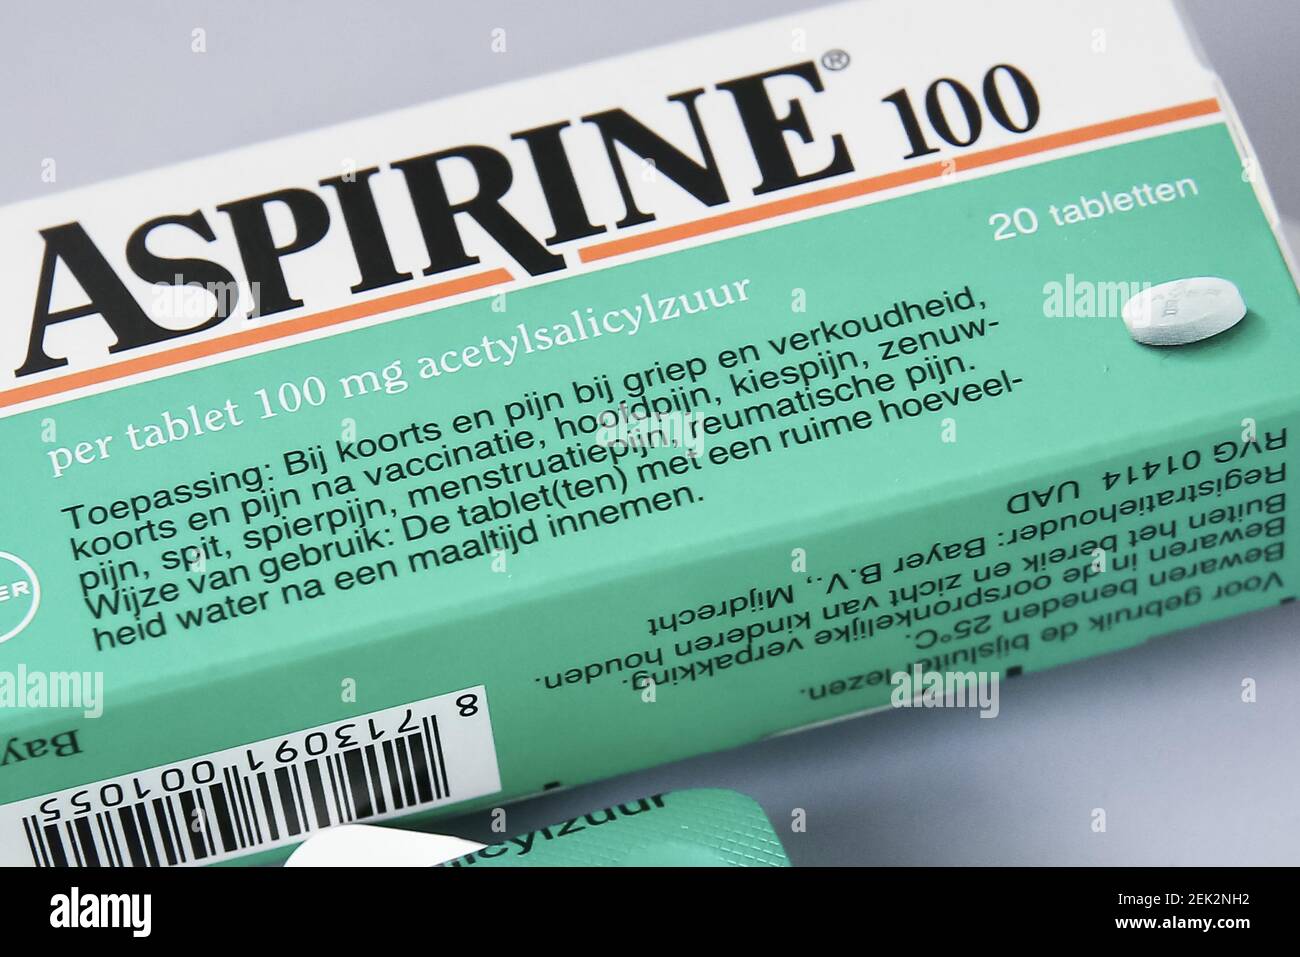 NIEUWEGEIN, 15-05-2020 , Dutchnews, Aspirin comprimés l'acide  acétylsalicylique est un médicament qui a un effet analgésique, réducteur  de fièvre et anti-inflammatoire. Le médicament était le analgésique le plus  largement utilisé sous le